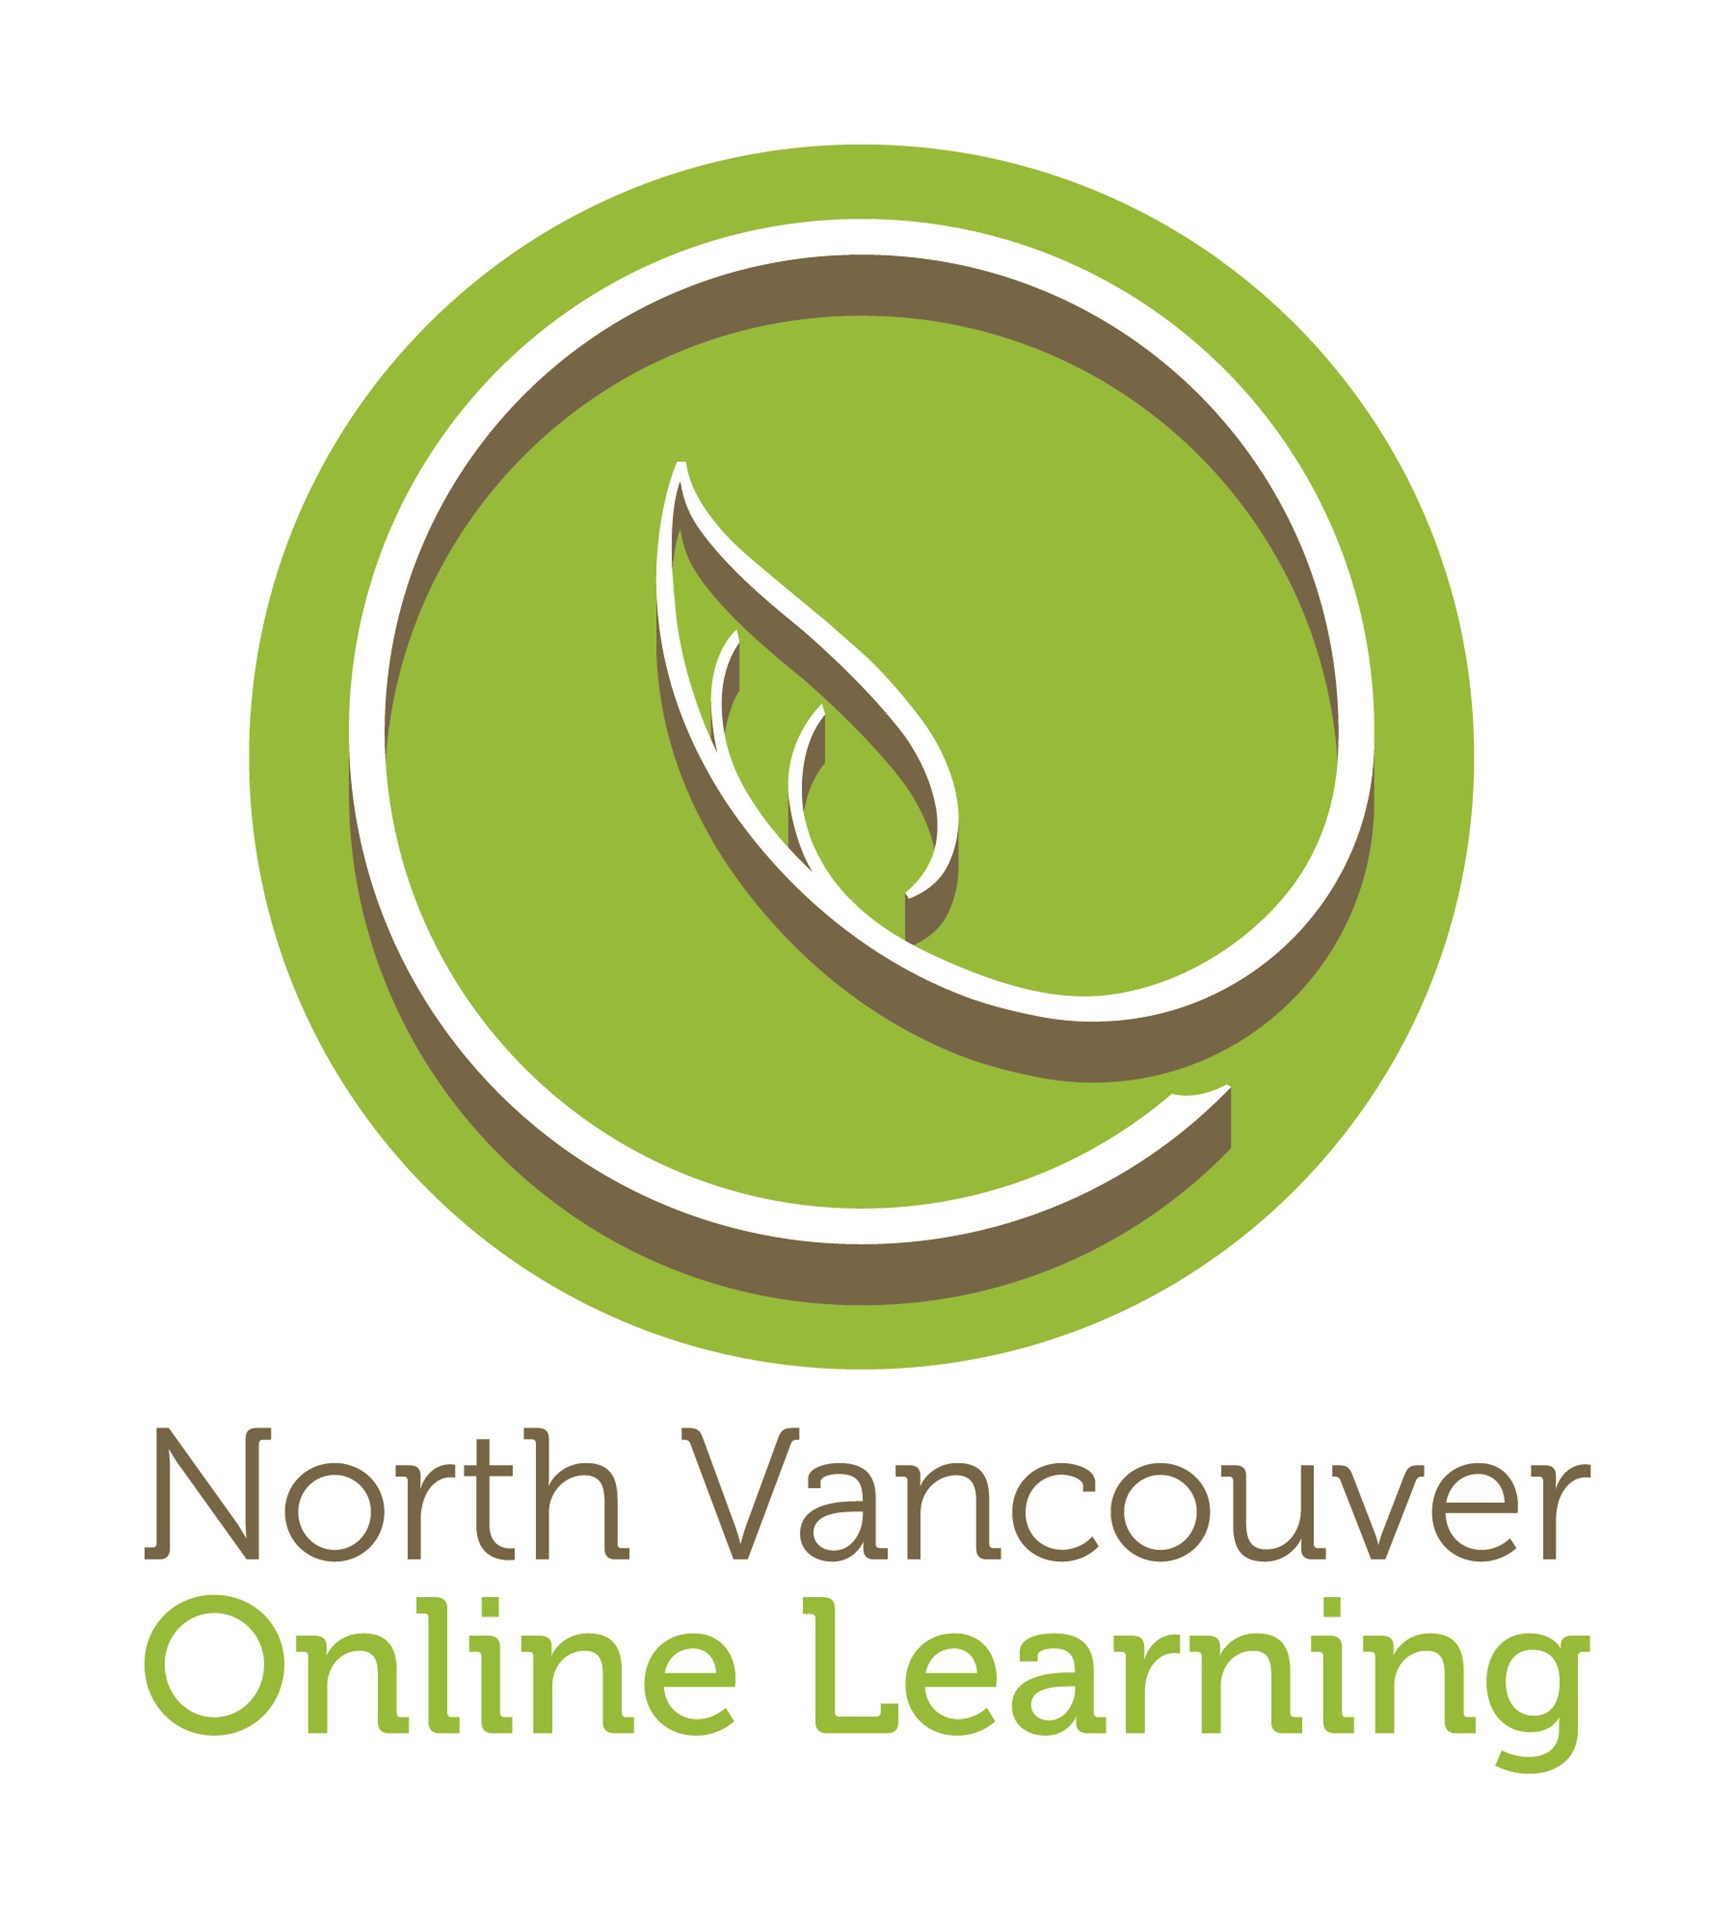 NV_OnlineLearning_Vertical.Logo-01.jpg